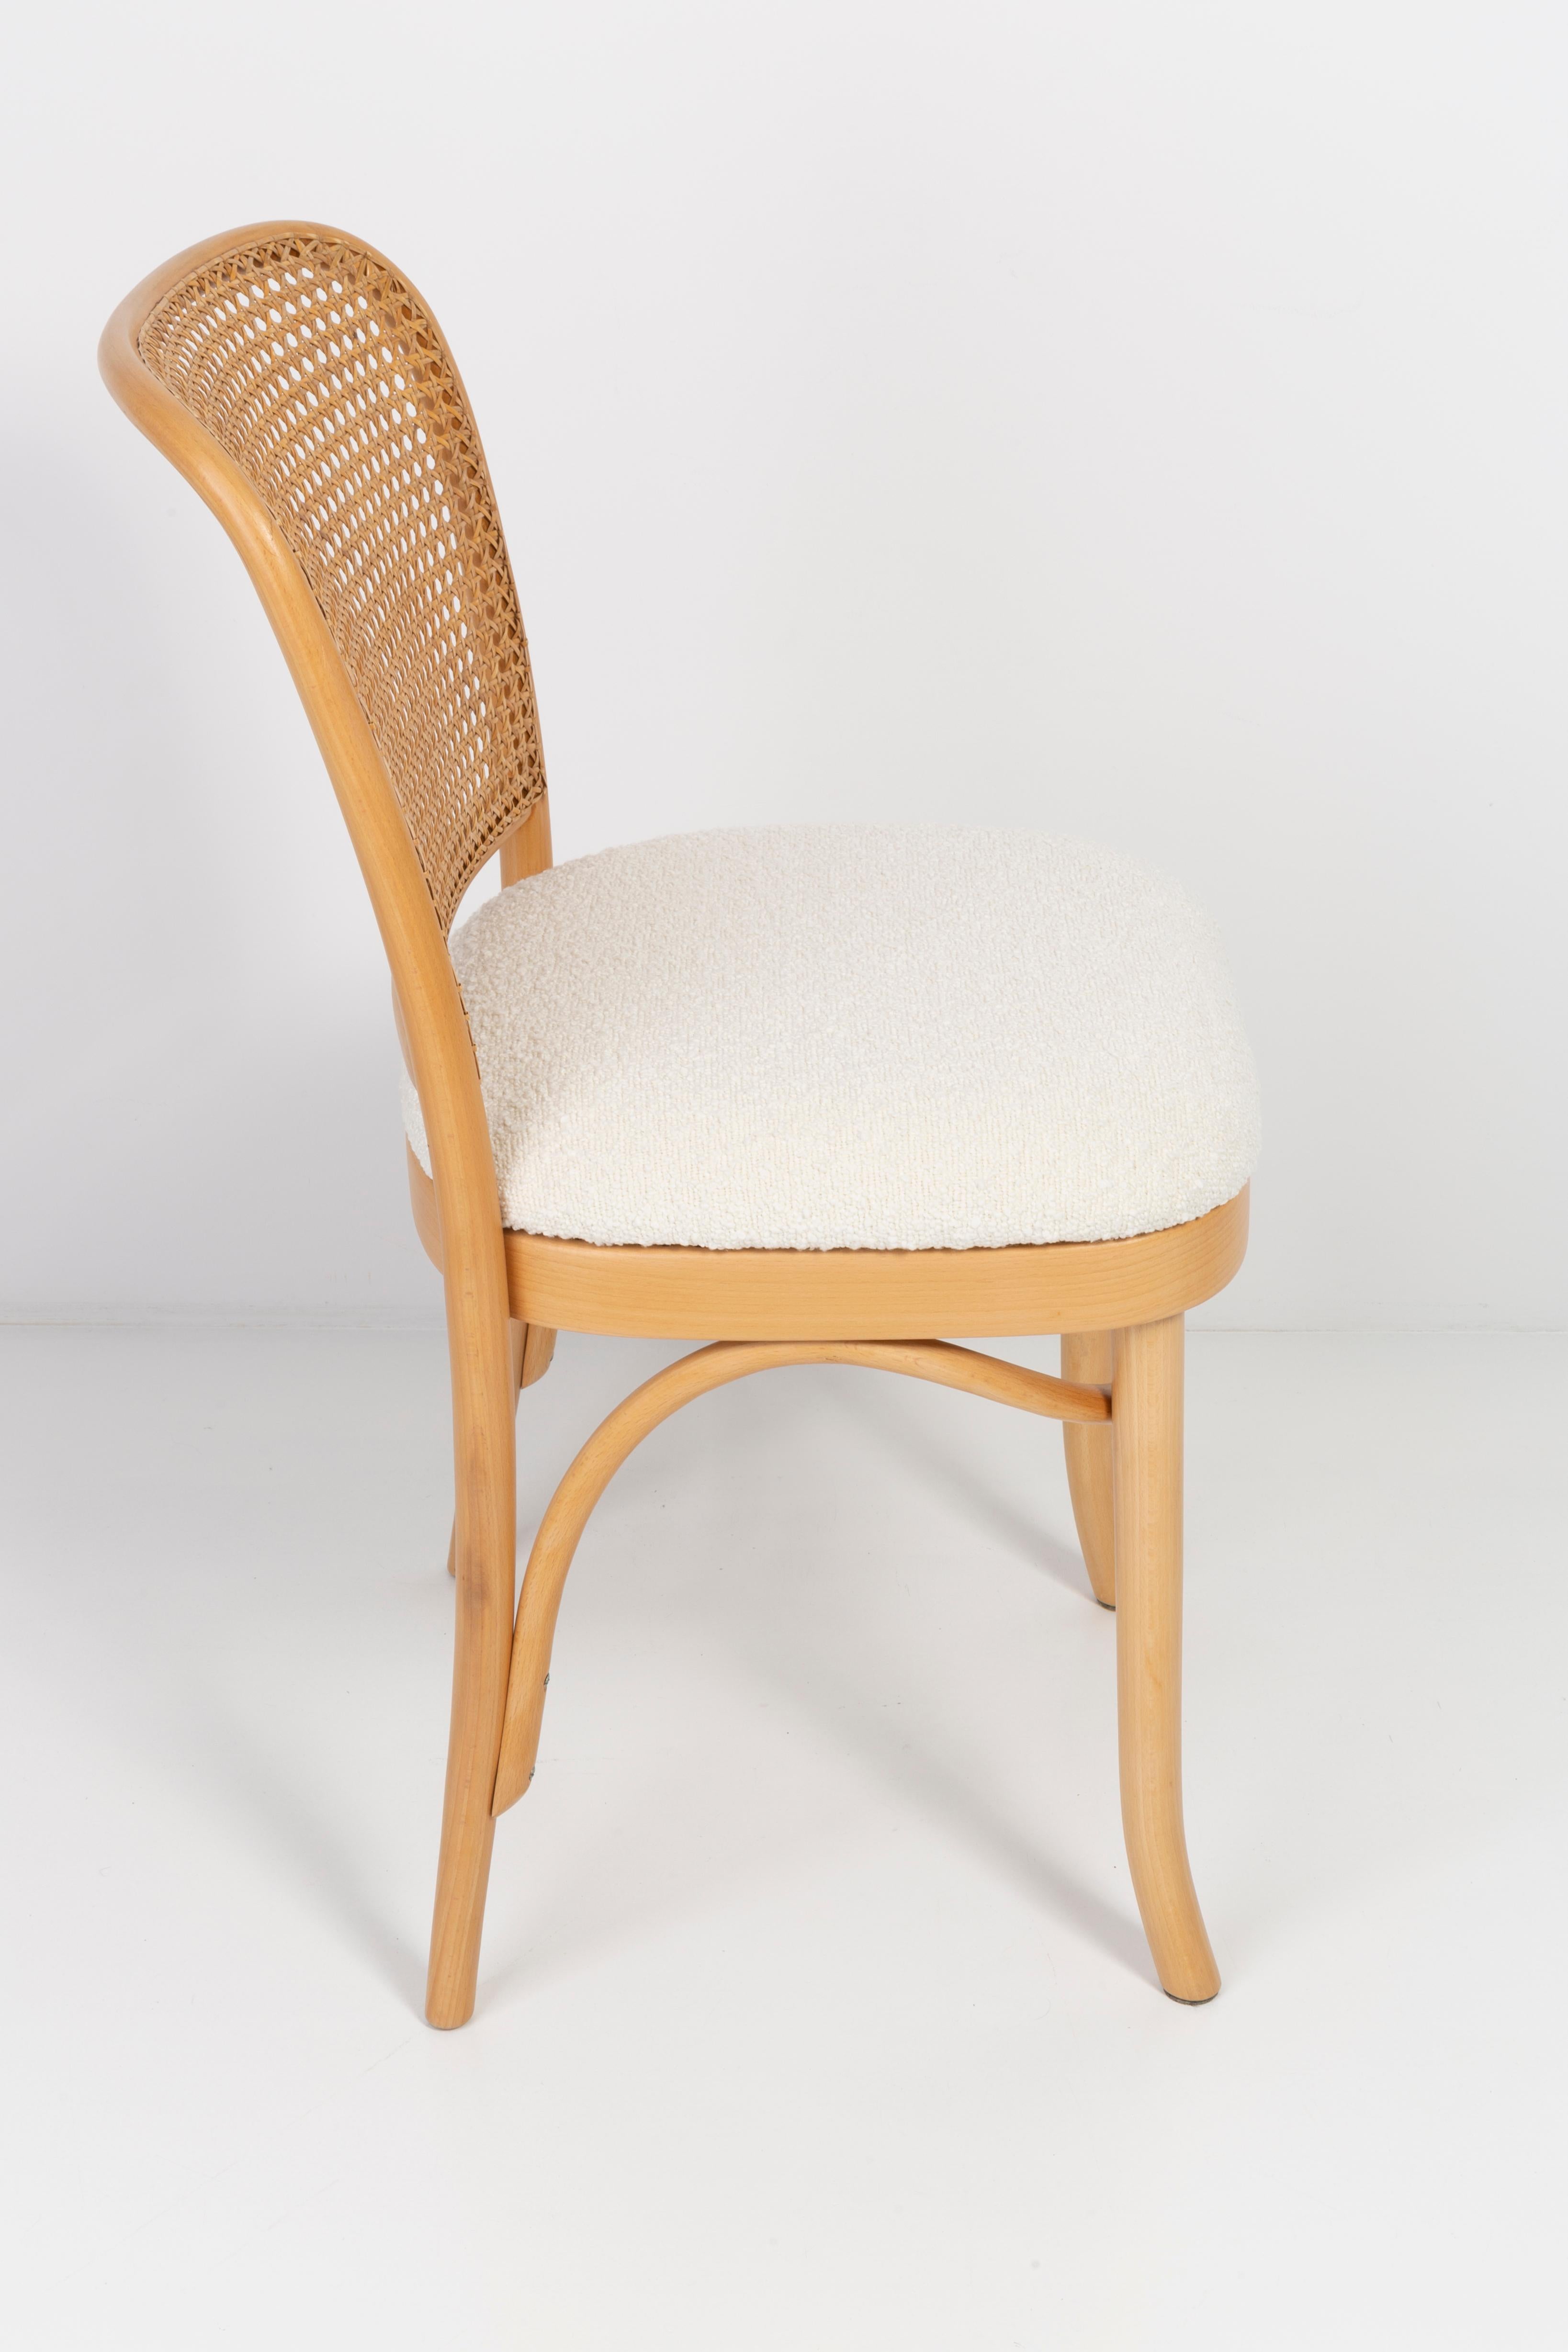 Schöner Stuhl aus Rattan, Boucle und Holz. Sie wurden in der Holzverarbeitungsfabrik Thonet hergestellt und von uns gründlich renoviert. Die Konstruktion ist aus mit Wasserbeize hellbraun gefärbtem Buchenholz gefertigt. Die Stühle sind mit